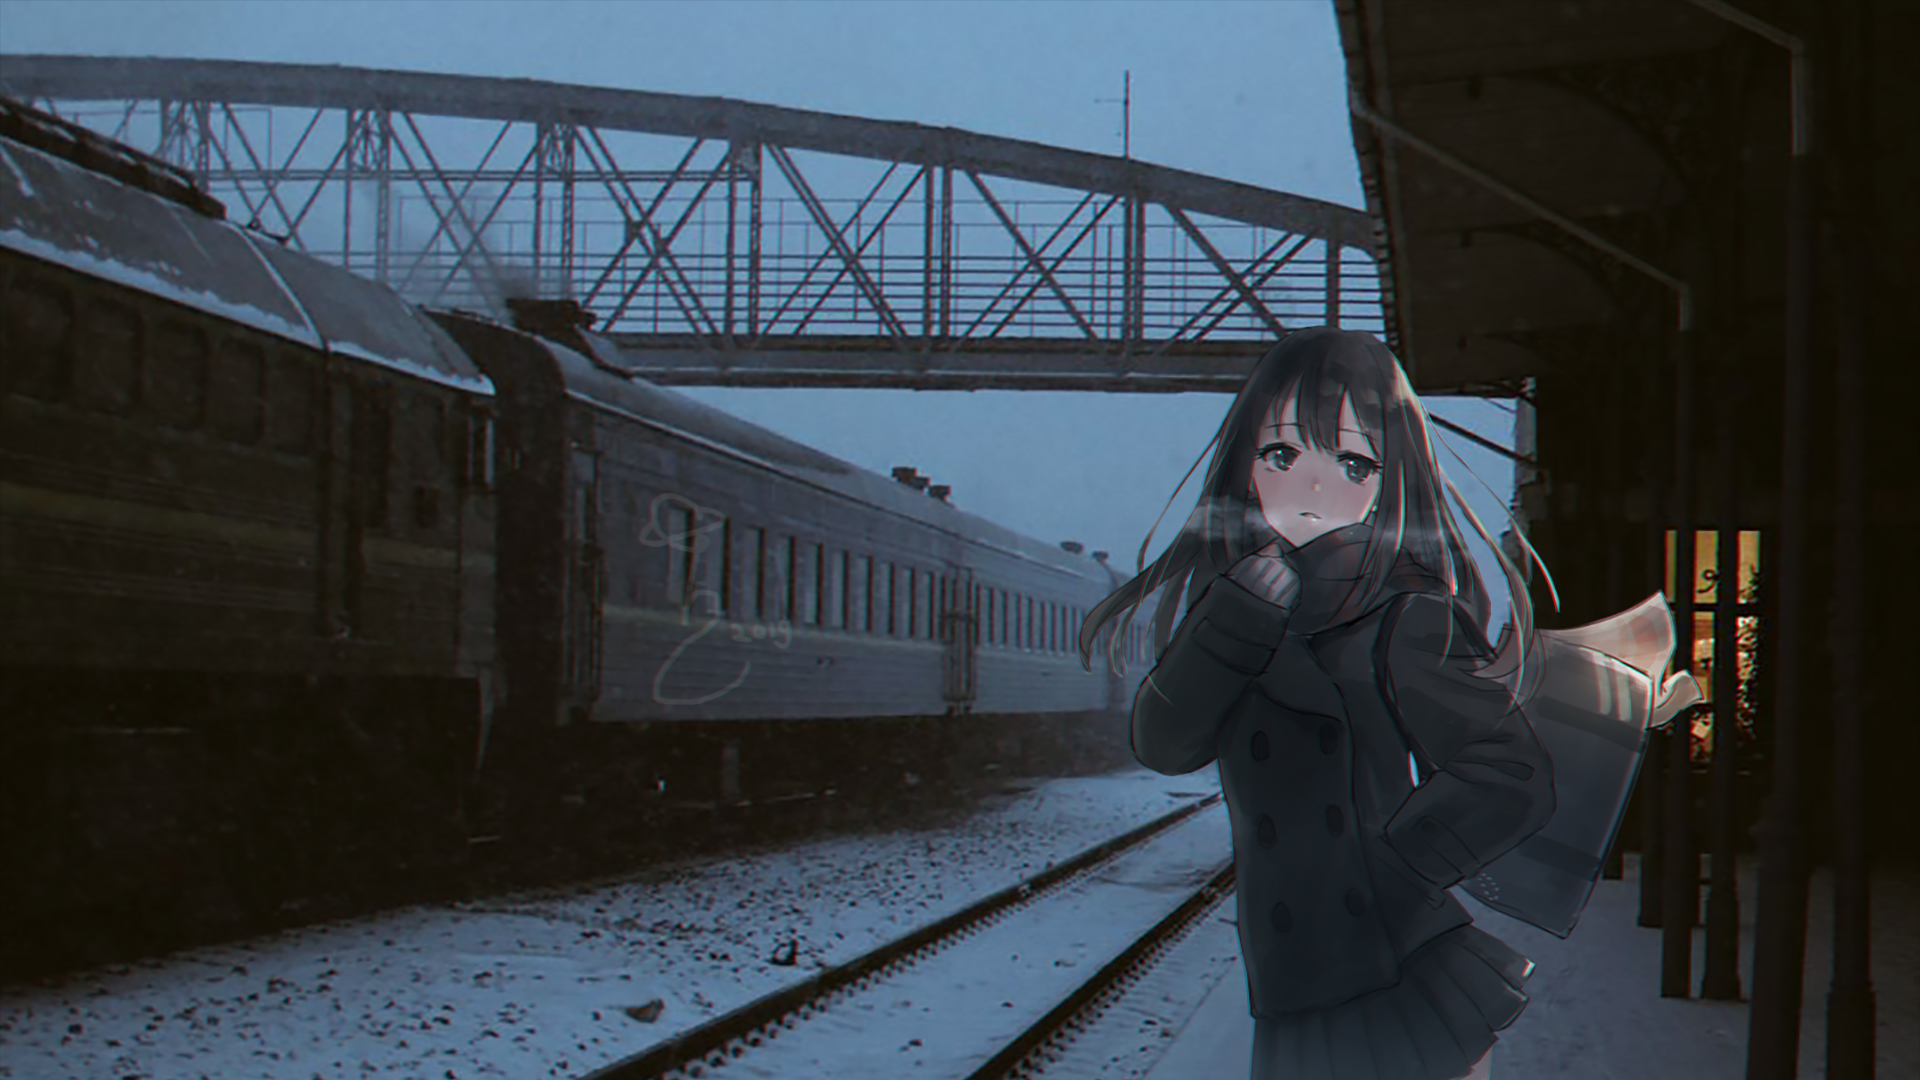 Anime 1920x1080 anime anime girls waiting train train station animeirl